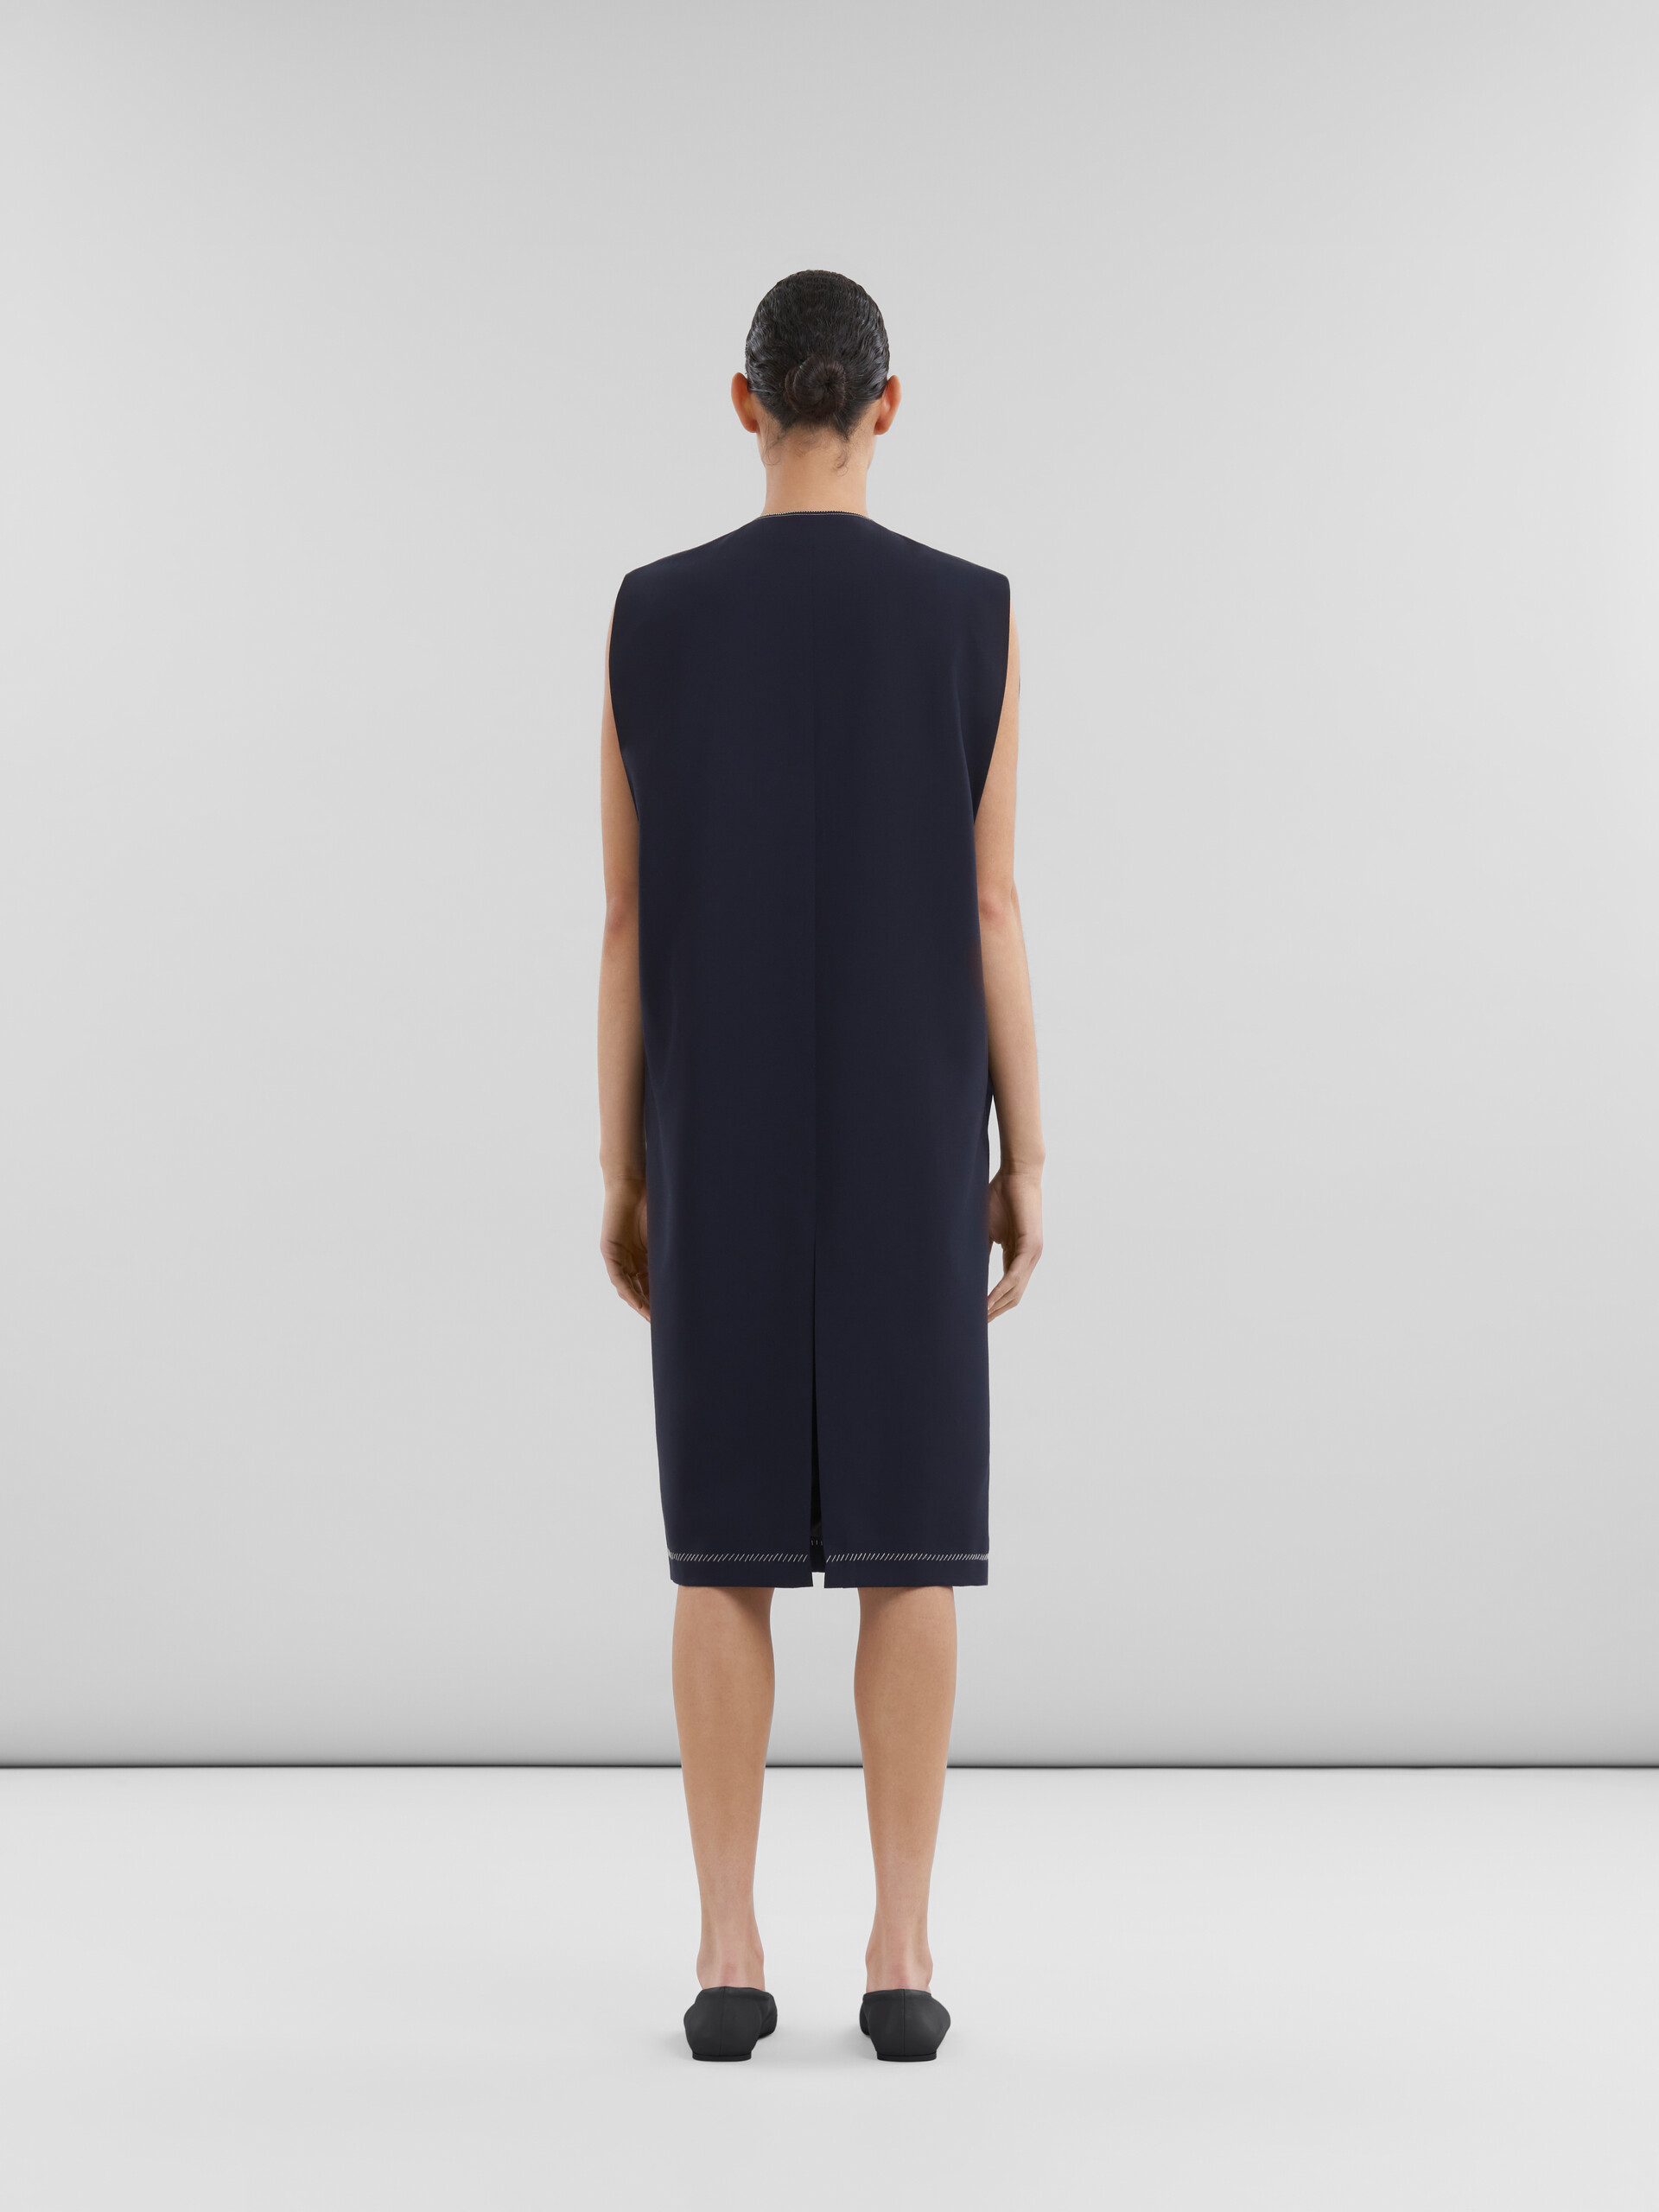 ディープブルー トロピカルウール製 Vネックドレス - ドレス - Image 3